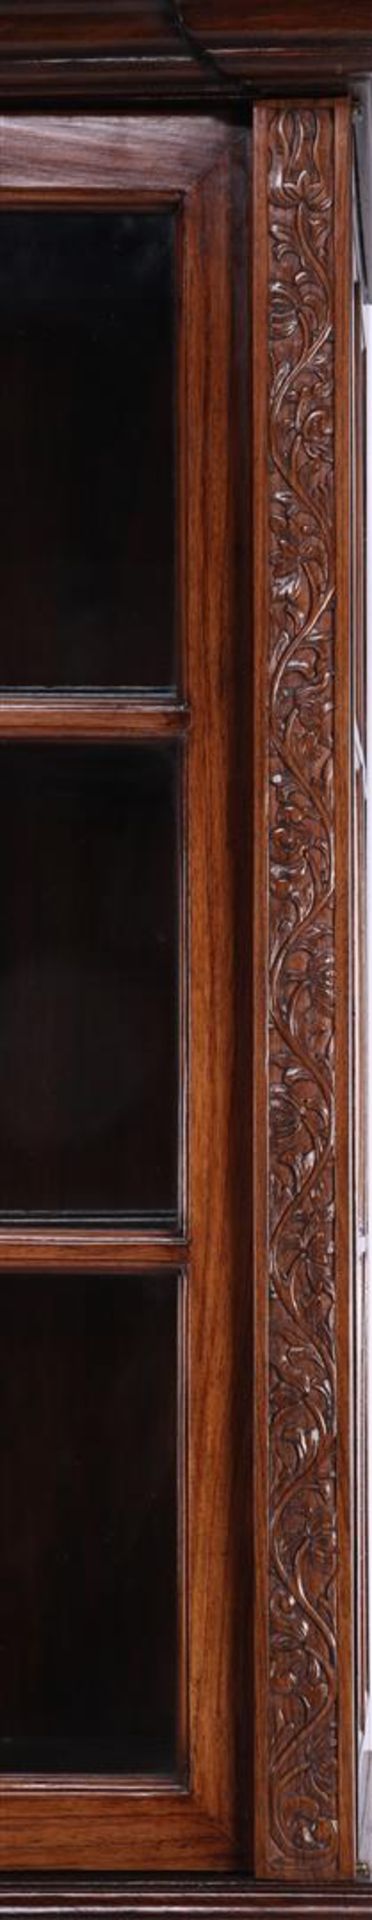 Padouk veneer with rosewood and teak wood 2-door show cupboard - Image 2 of 3